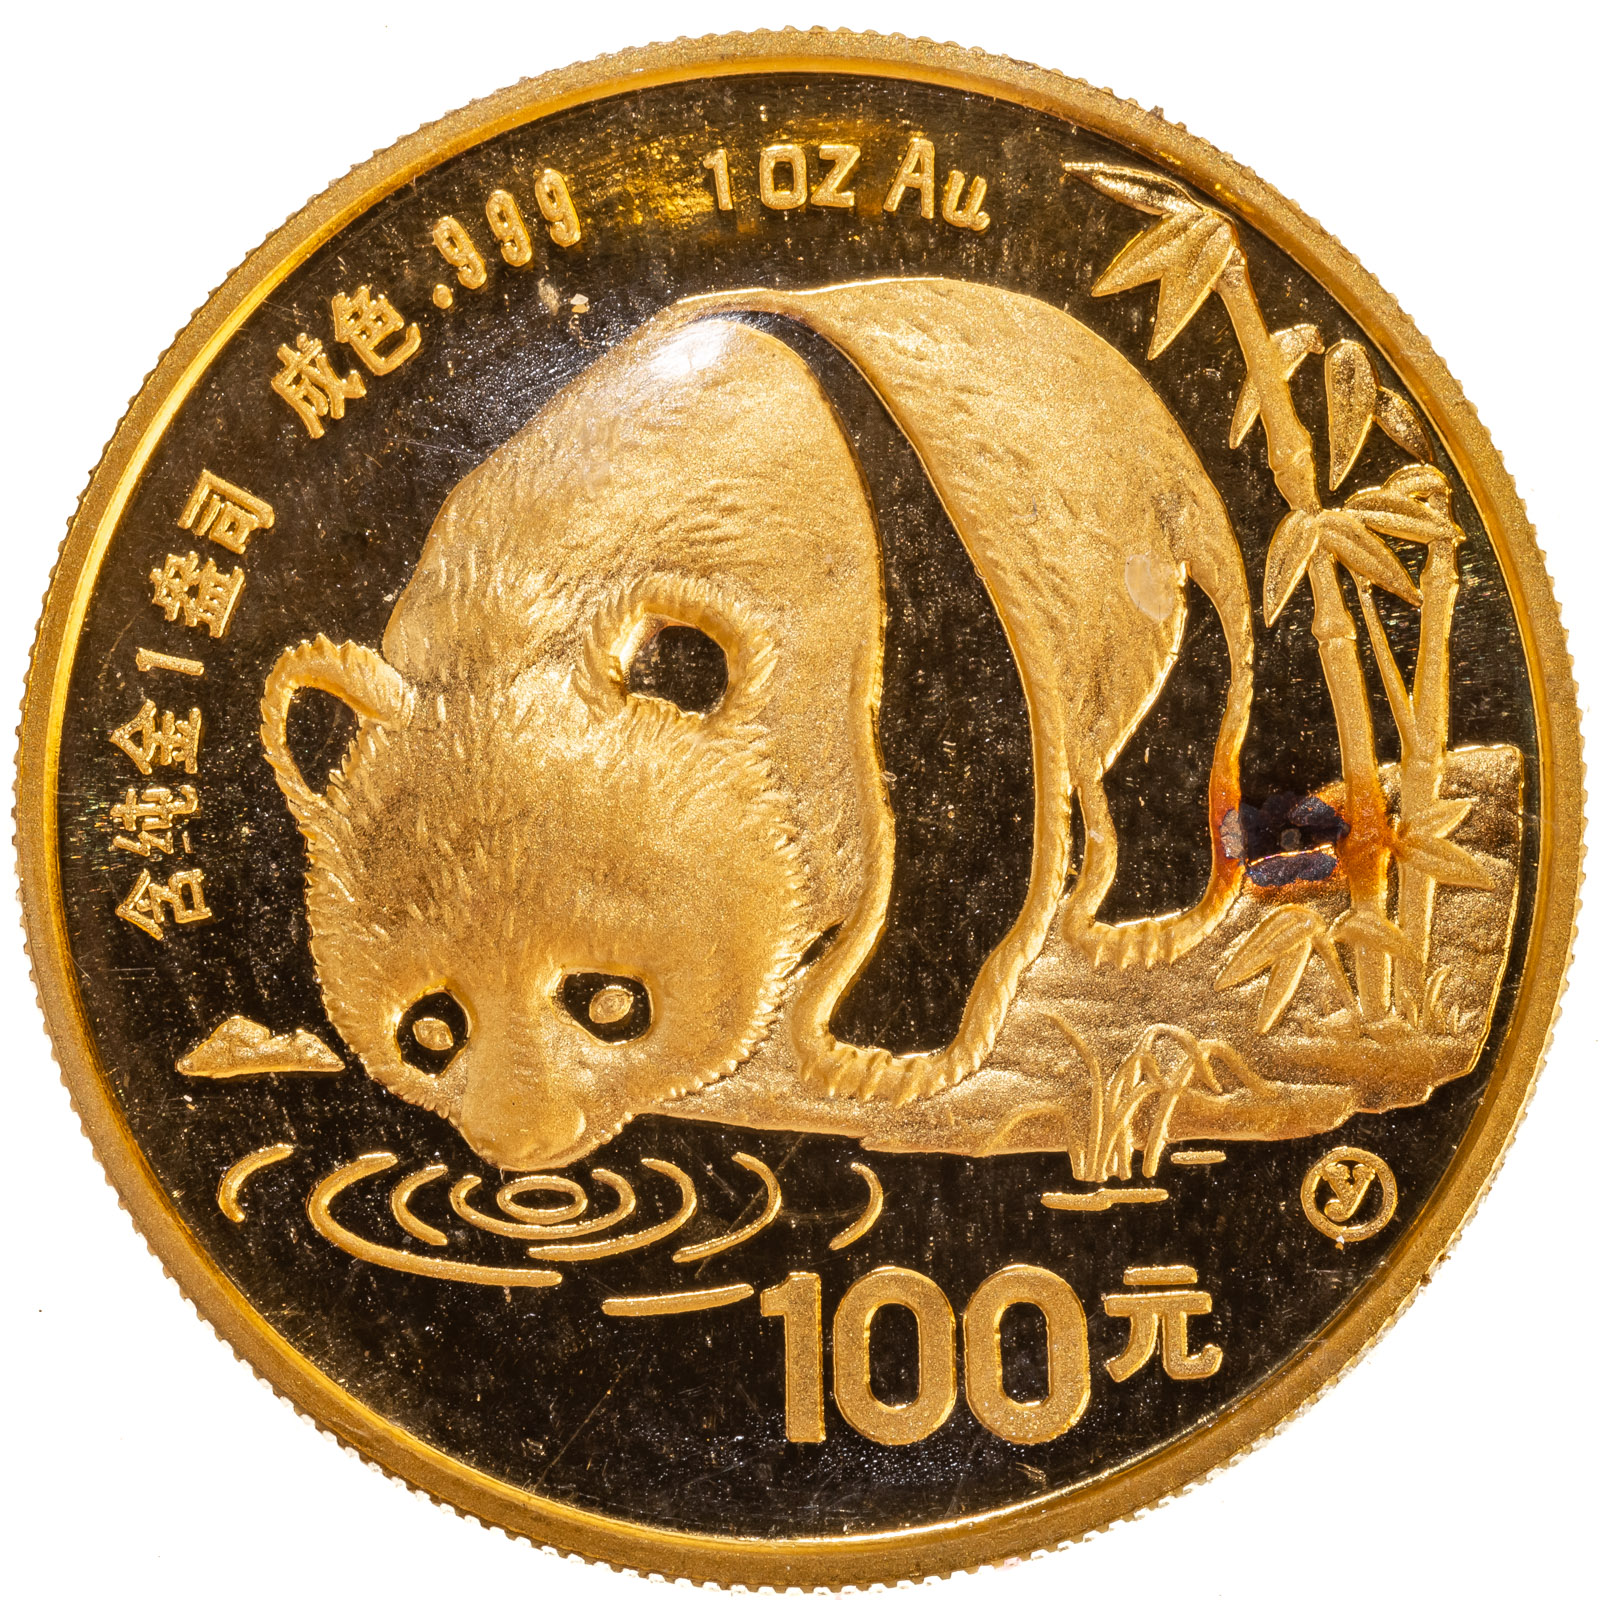 1987 100 YUAN GOLD 1 OZ PANDA UNC PROOF 287a10